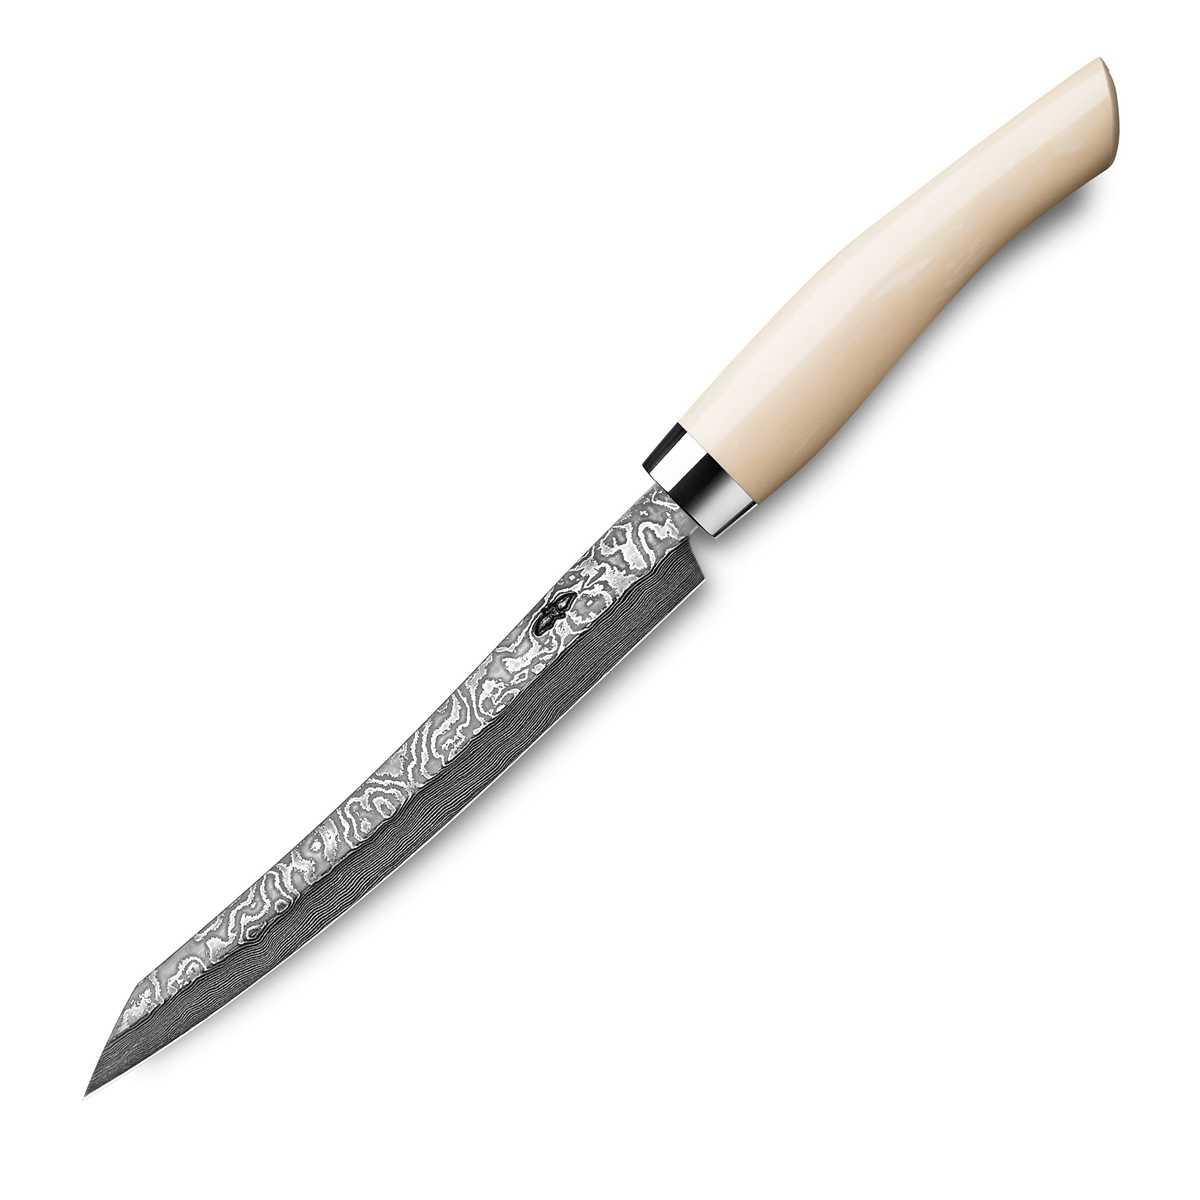 Nesmuk Exklusiv C100 Damast Slicer 16 cm mit Griff aus Juma Ivory